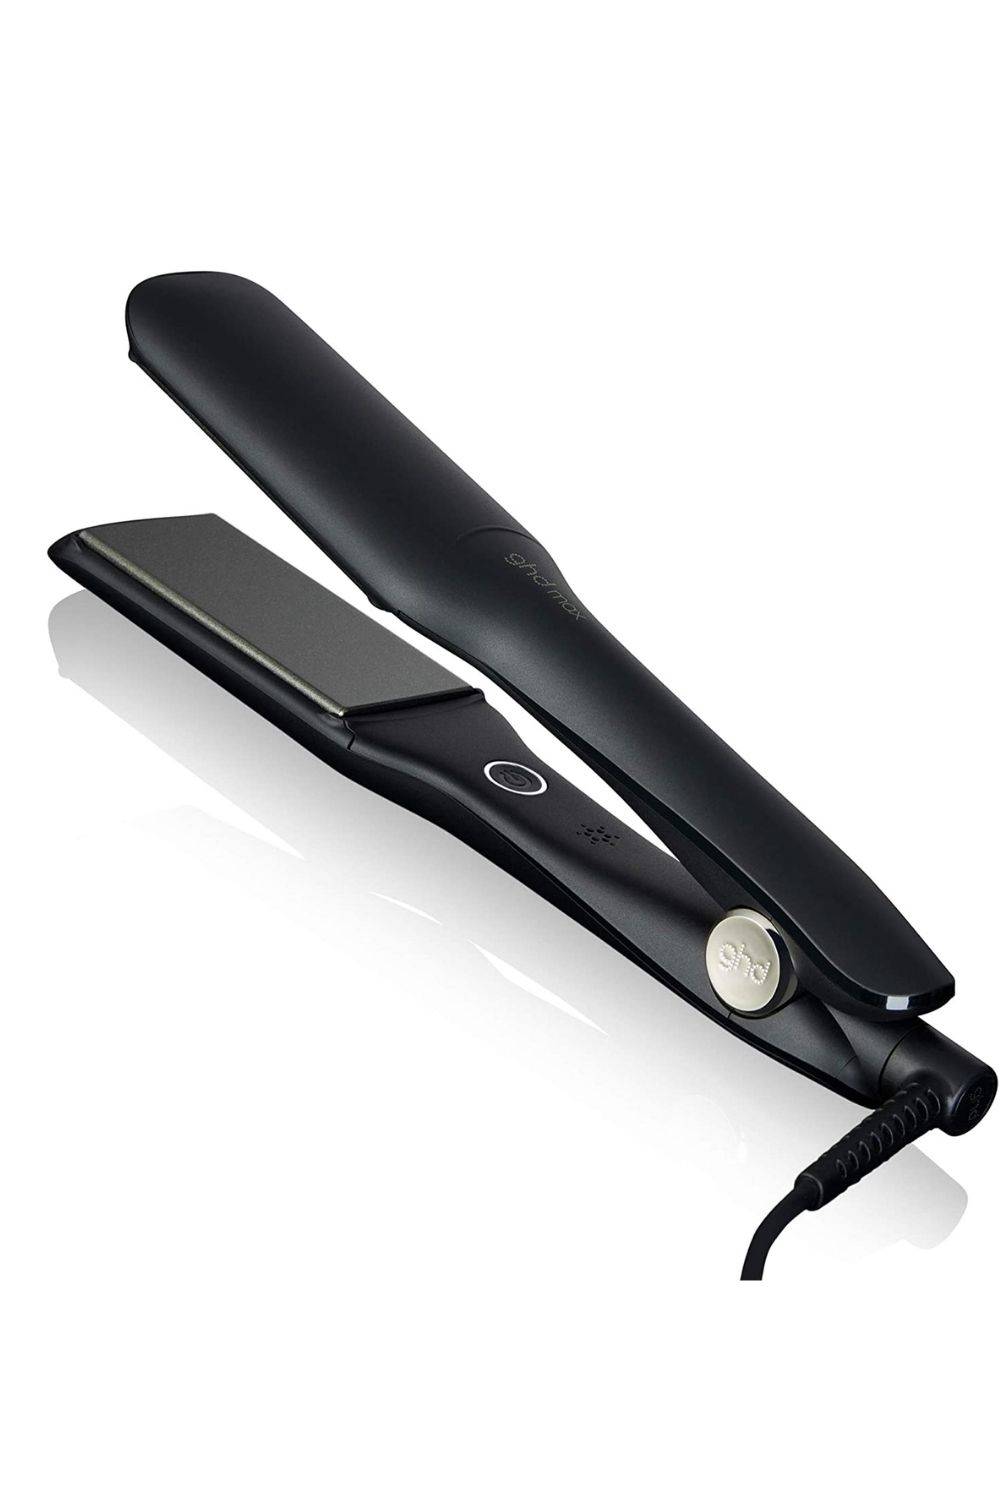 ghd max - Plancha de pelo profesional con placas anchas para cabello largo, grueso o rizado, tecnología dual zone, negra